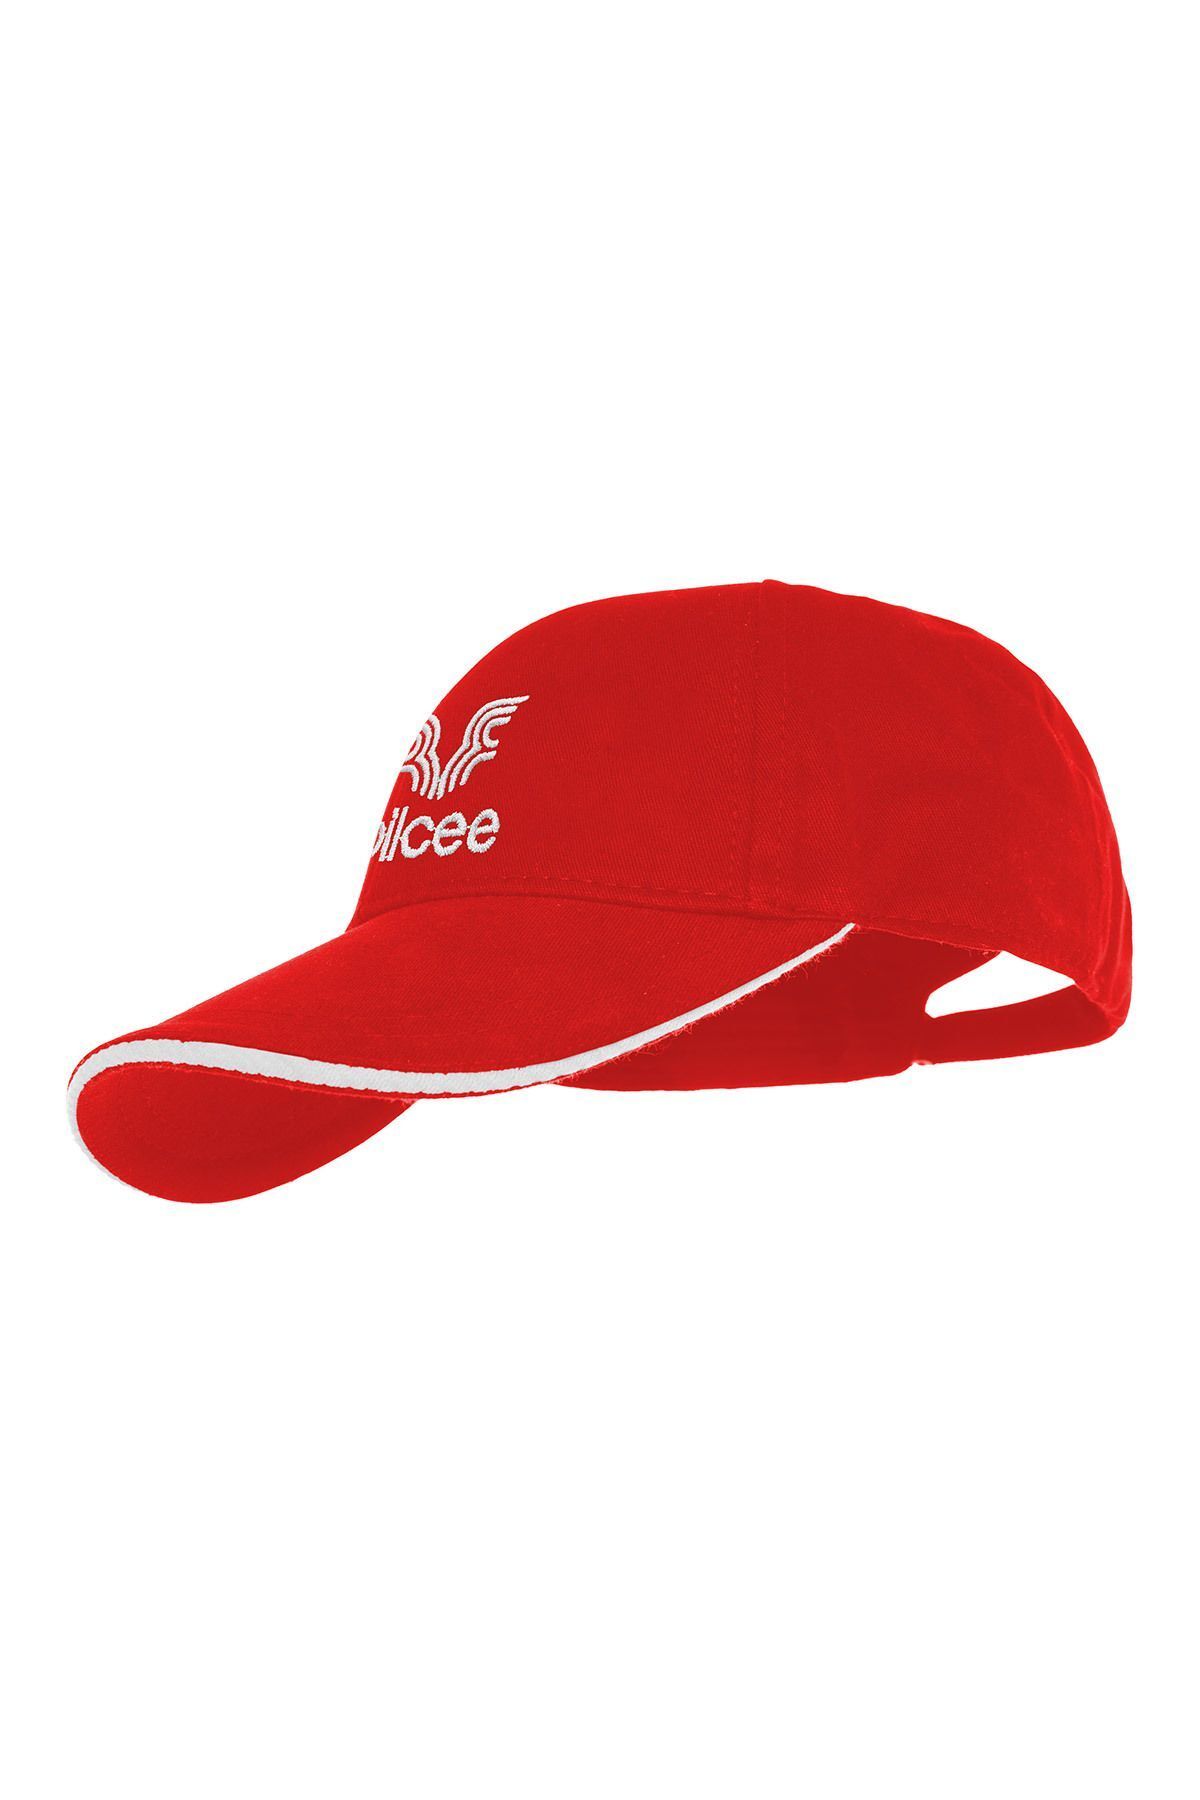 bilcee Unisex Kırmızı Şapka 1591